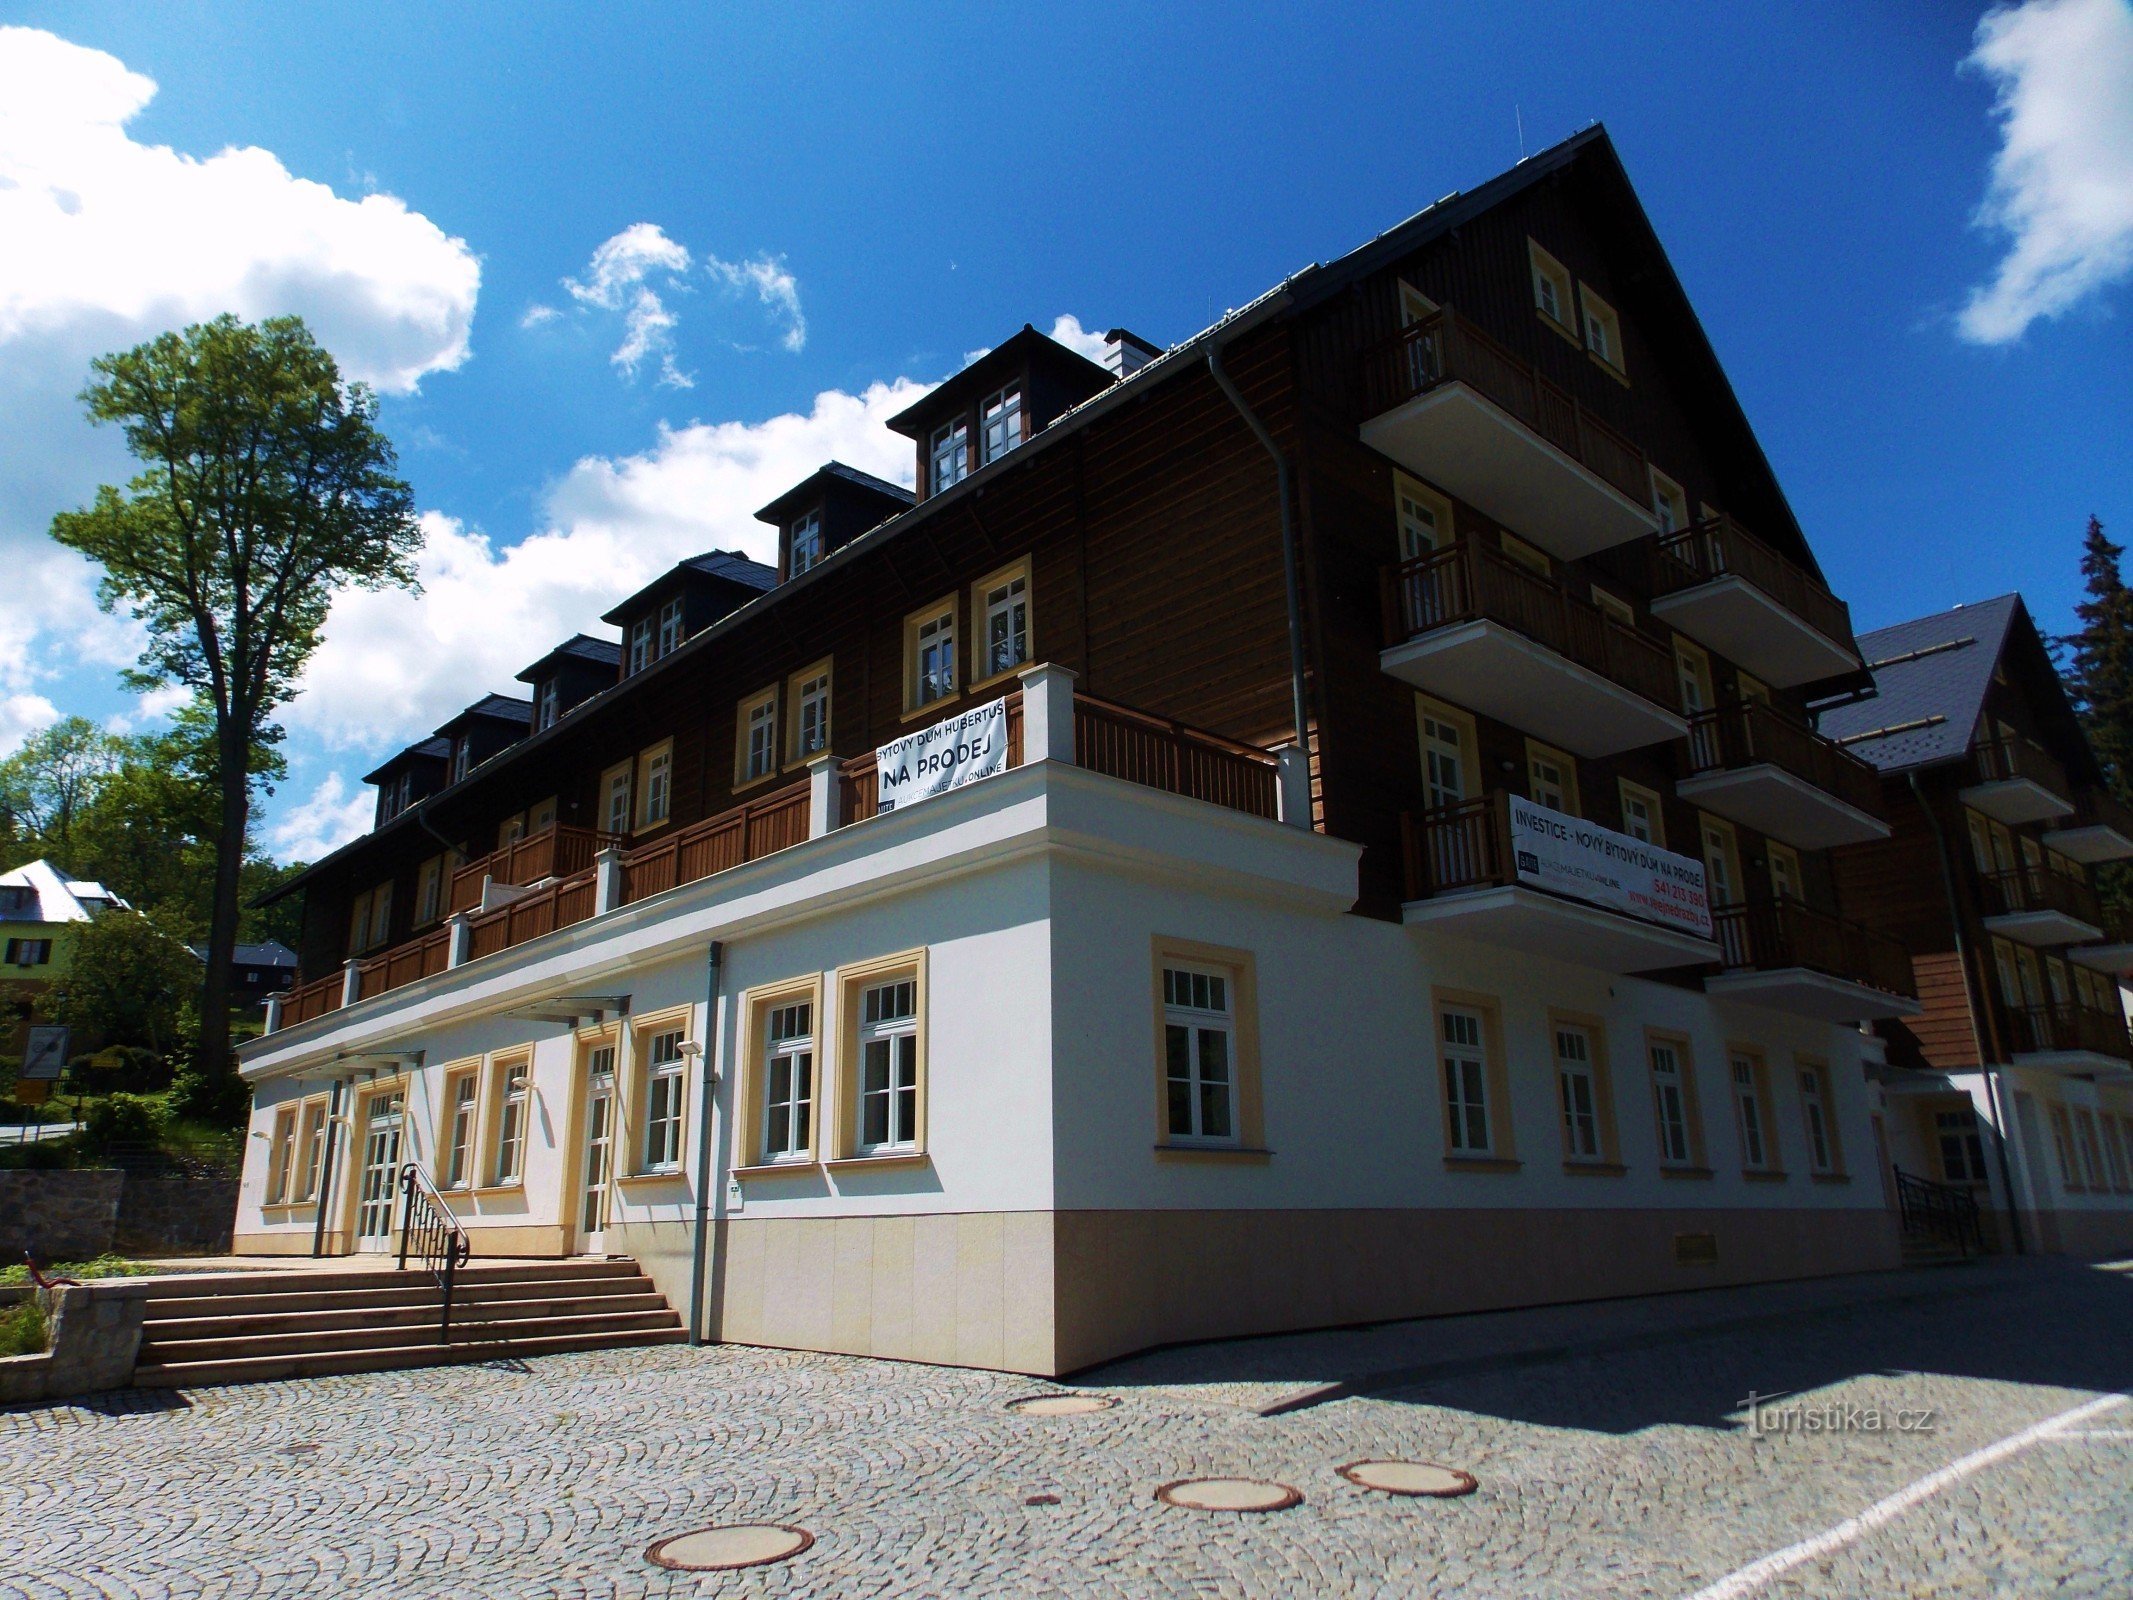 Το θρυλικό ξενοδοχείο Hubertus στην Karlová Studánka